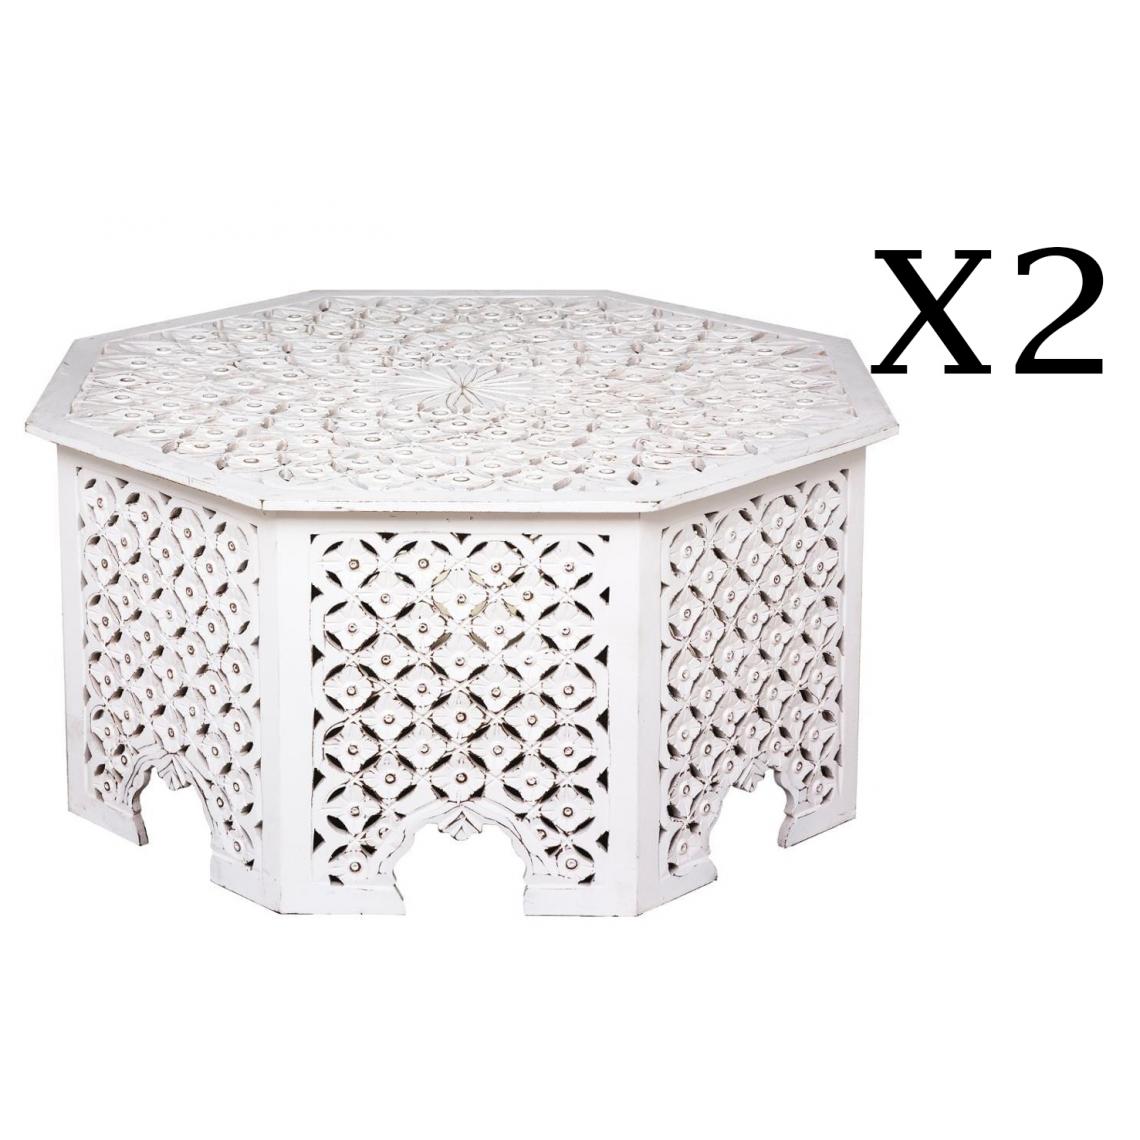 Pegane - Lot de 2 tables basses coloris blanc - Diamètre 91,5 x Hauteur 46 cm - Tables basses